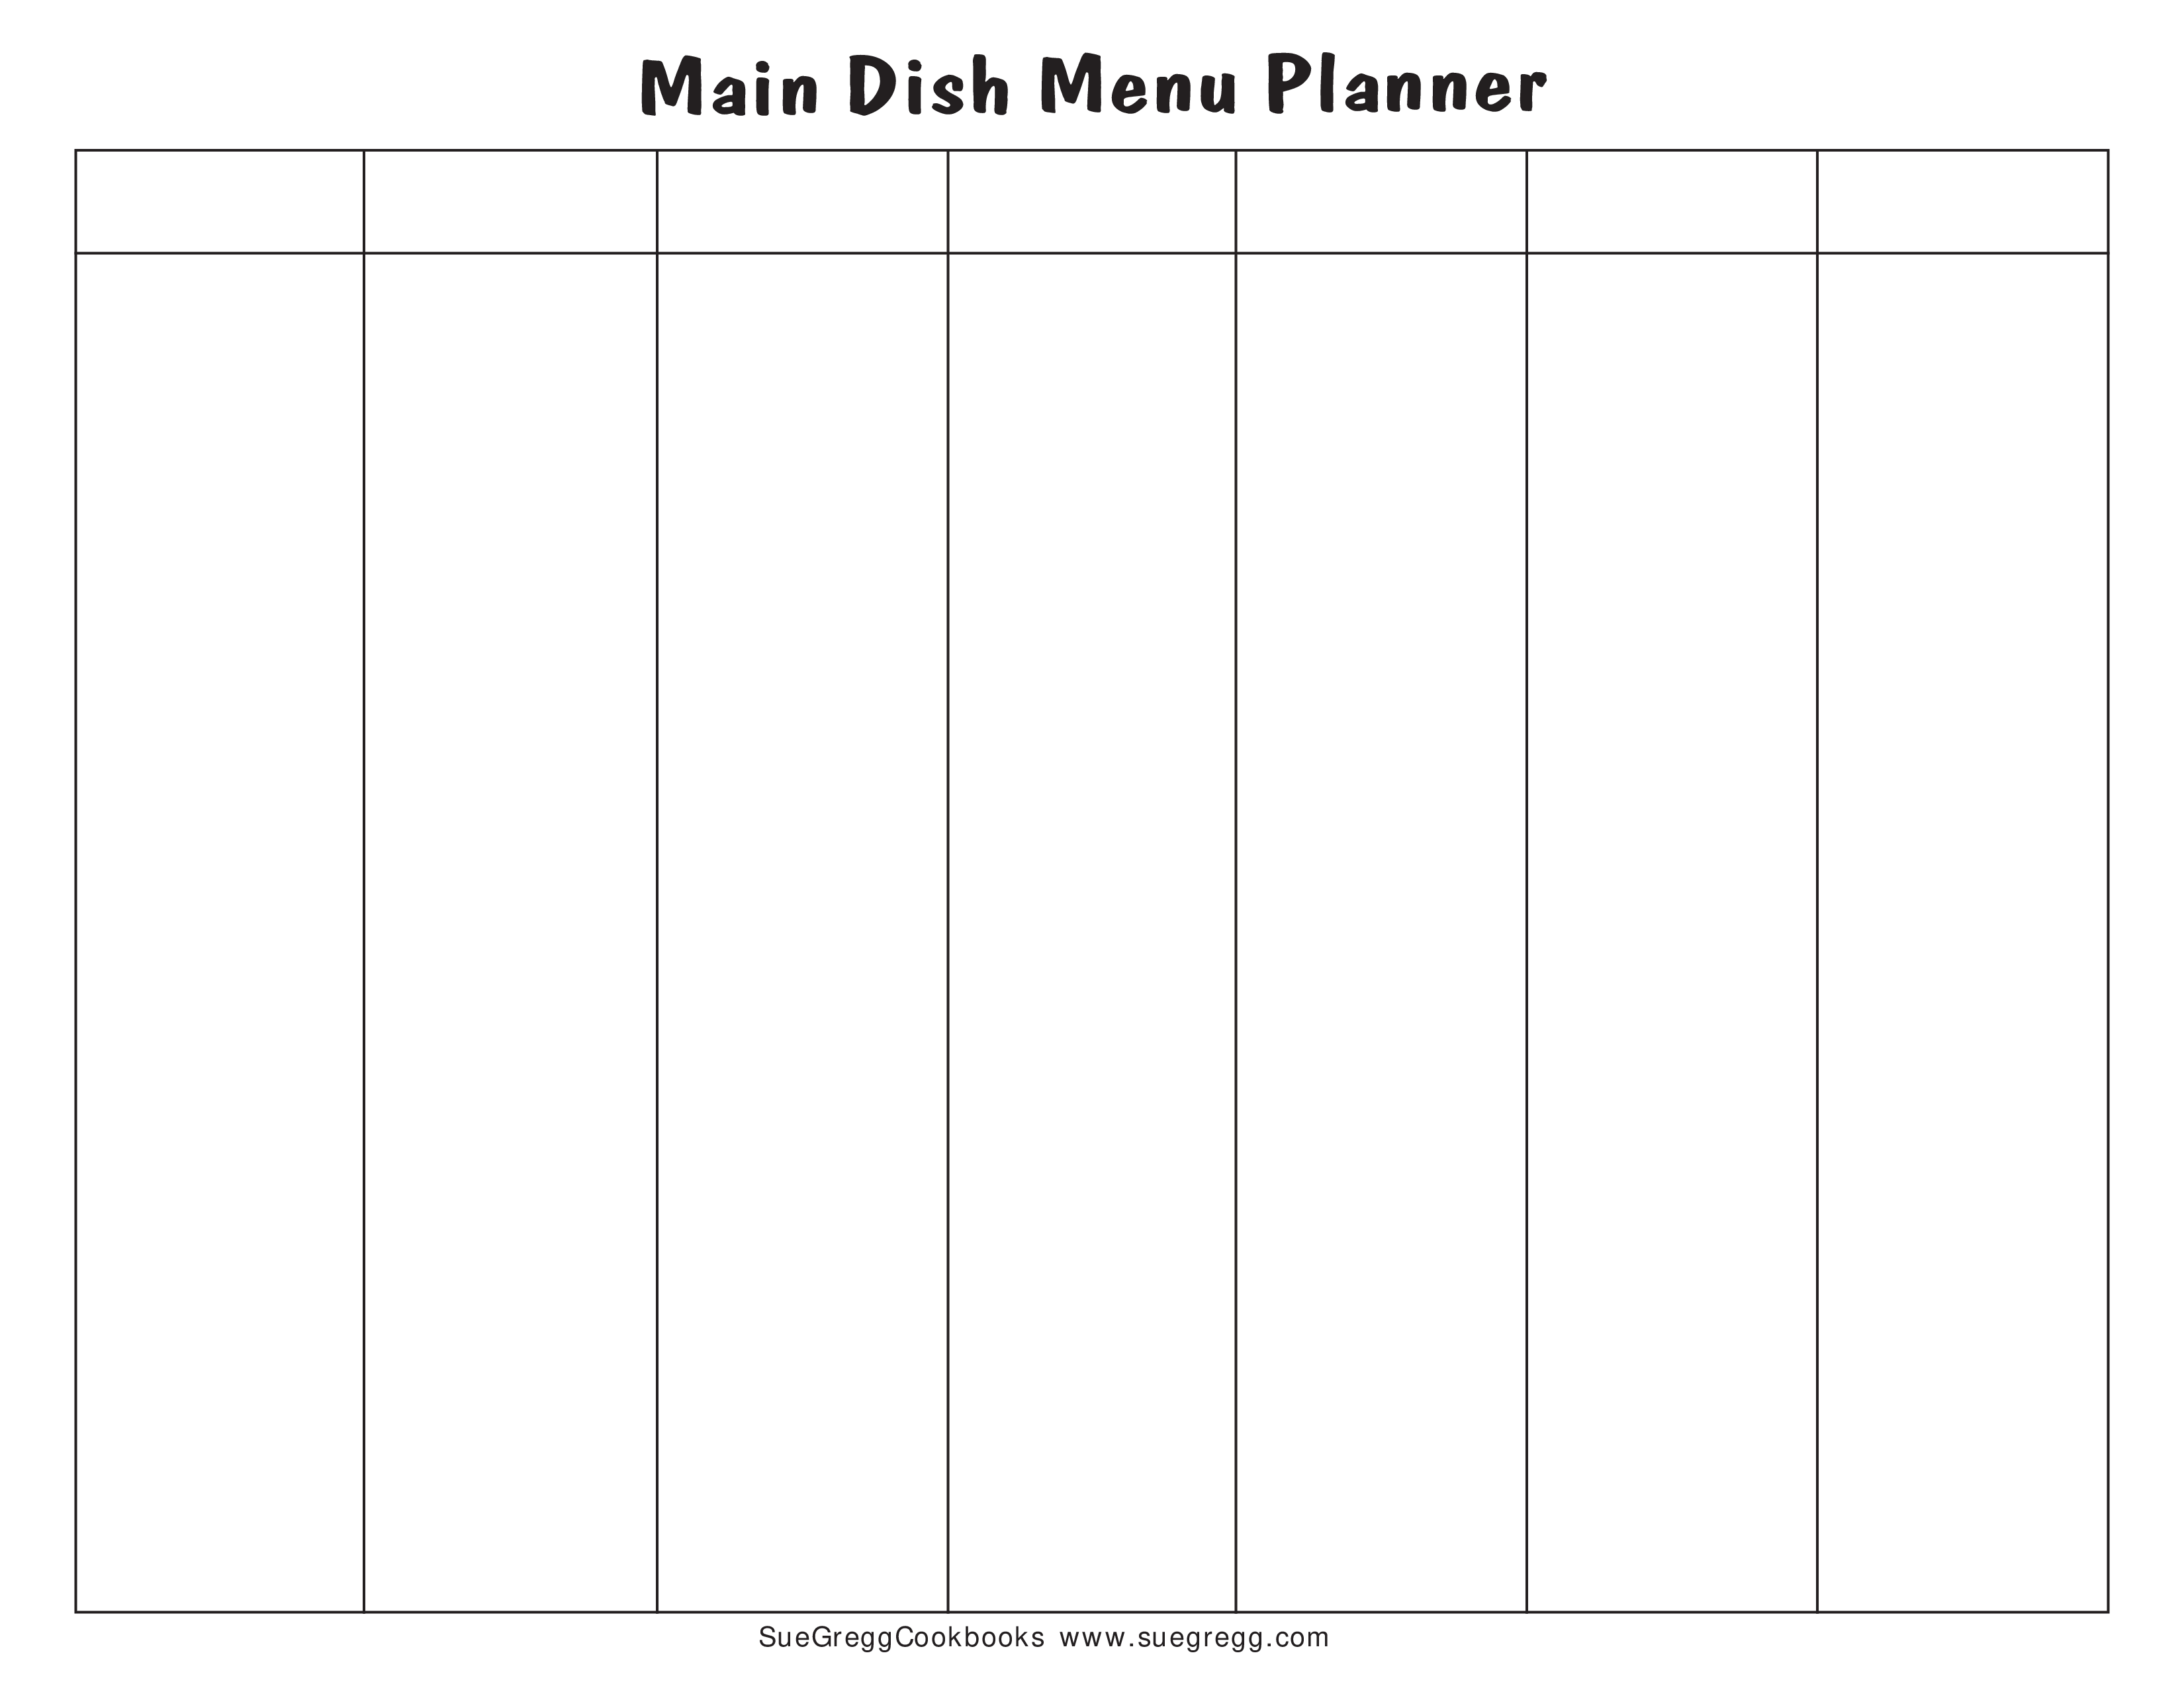 blank menu calendar template